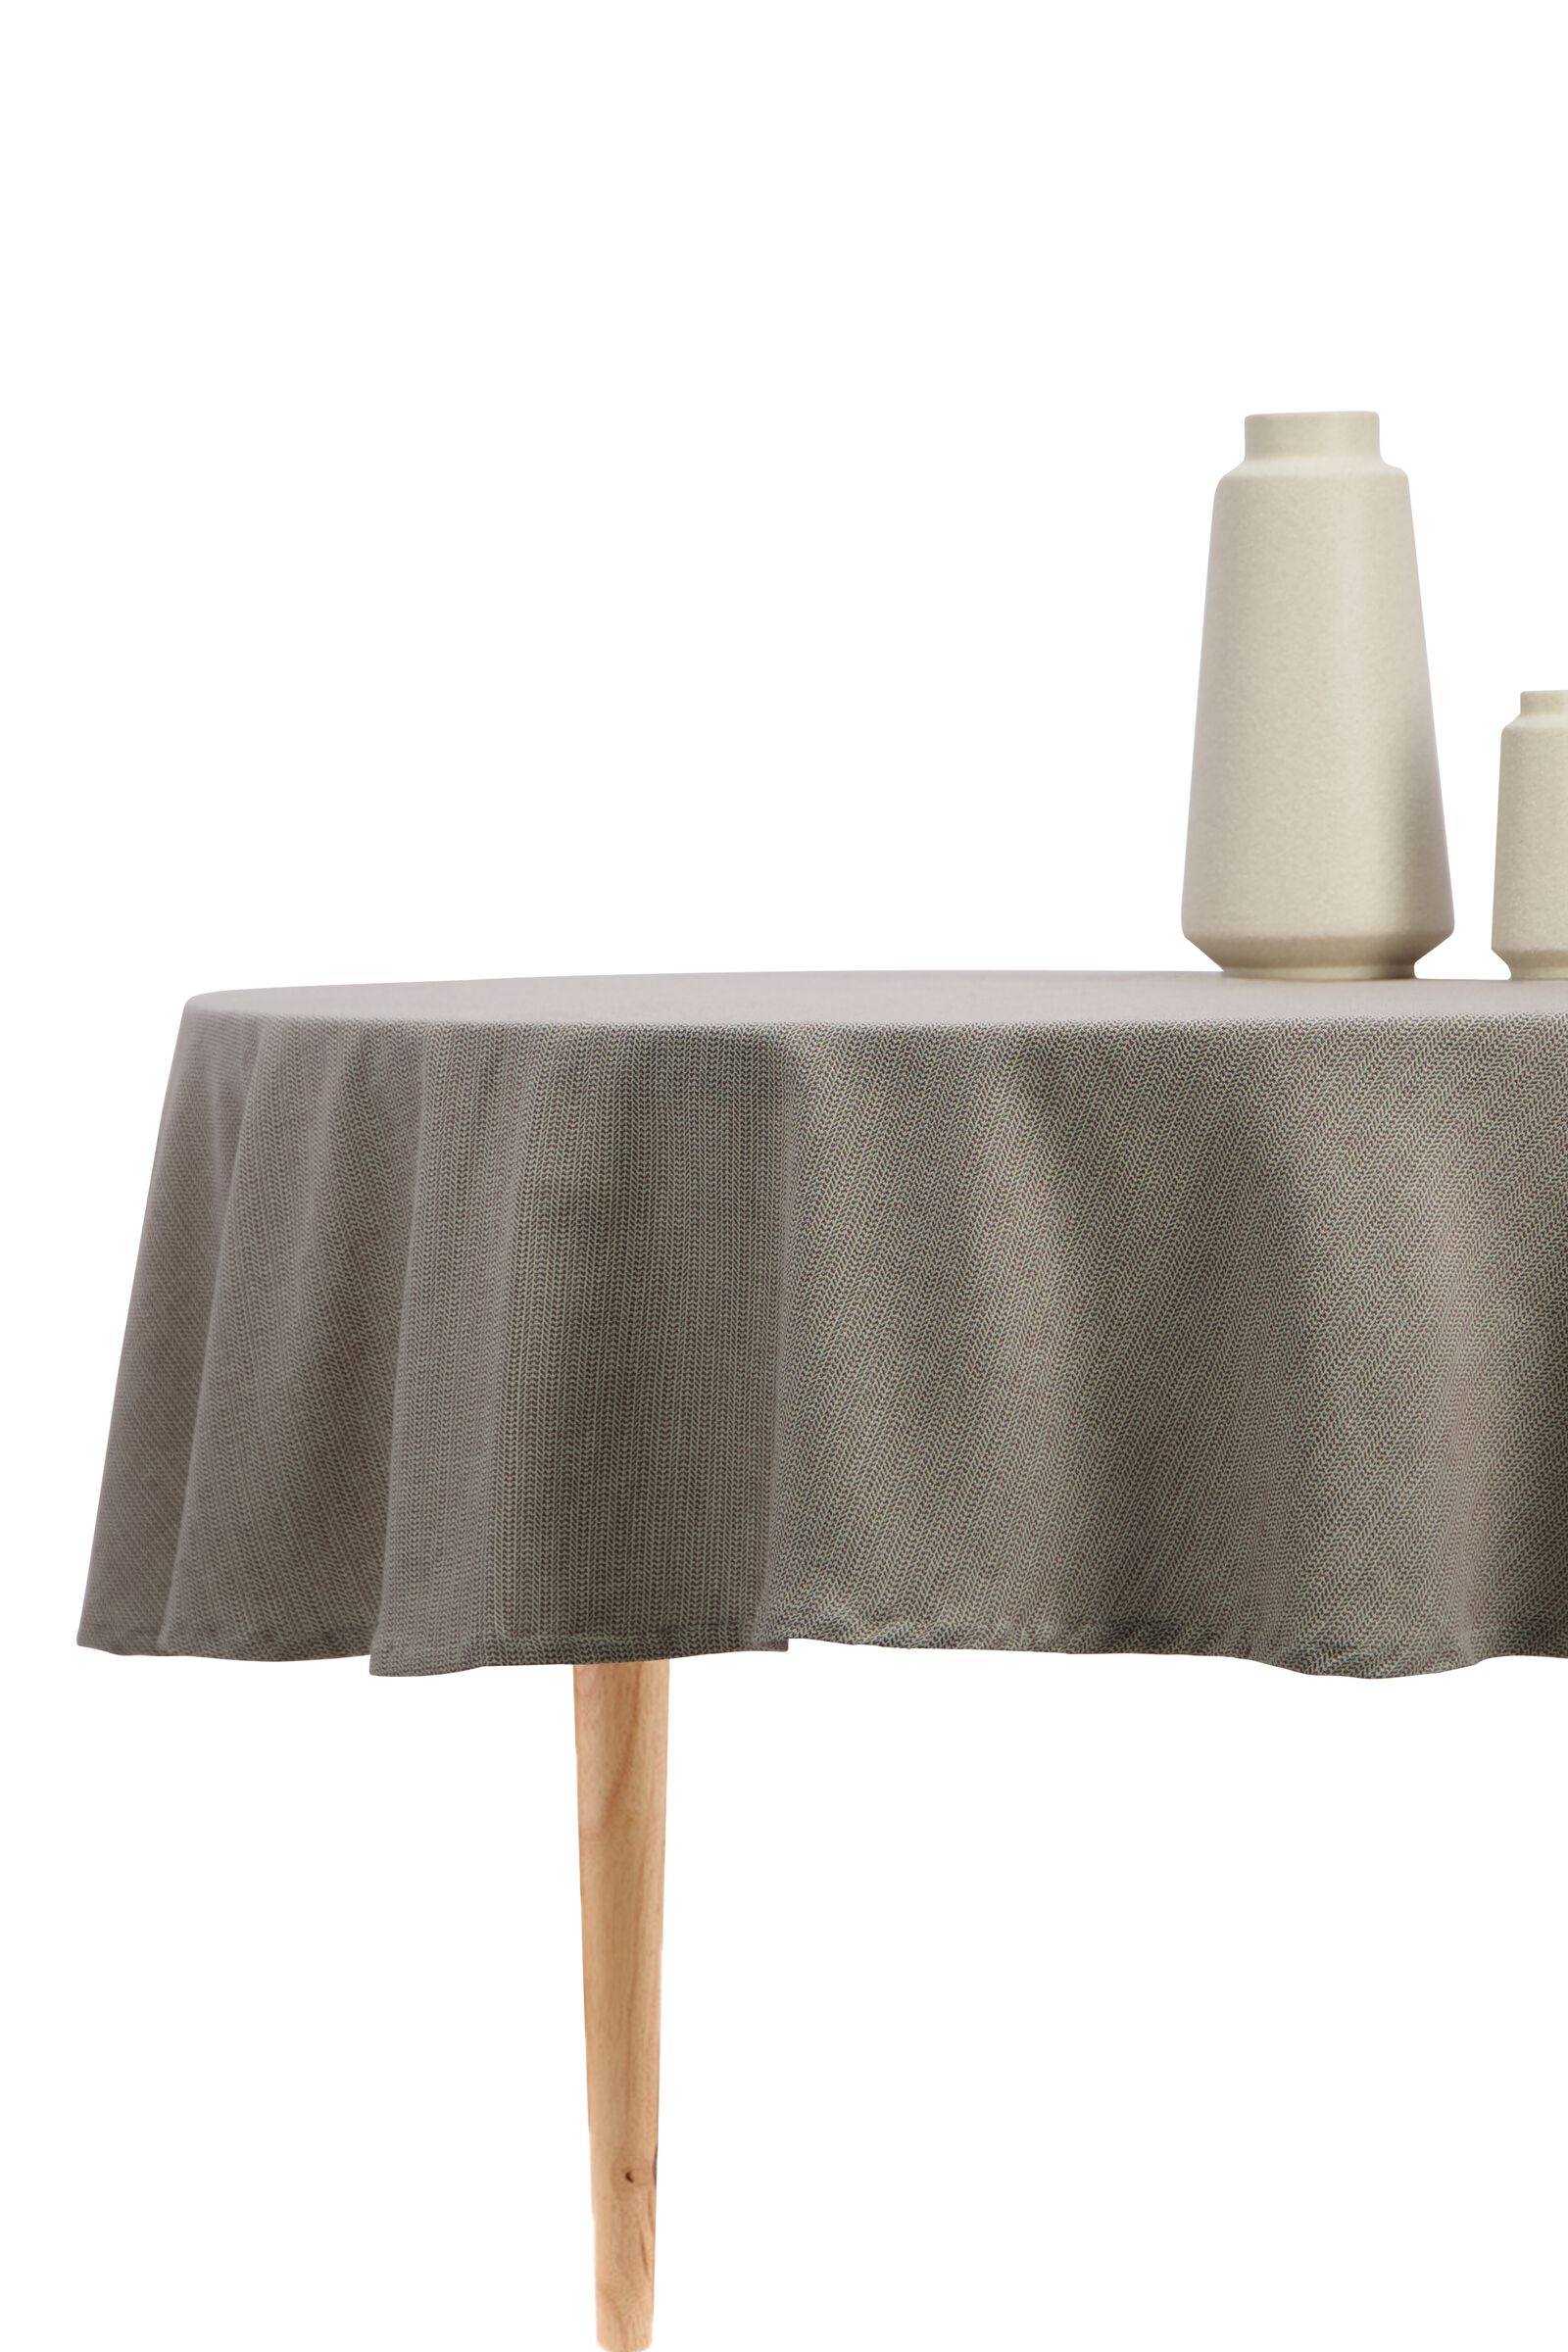 Tischdecke, rund, Ø 180 cm, Baumwolle, naturfarben - 5300107 - HEMA